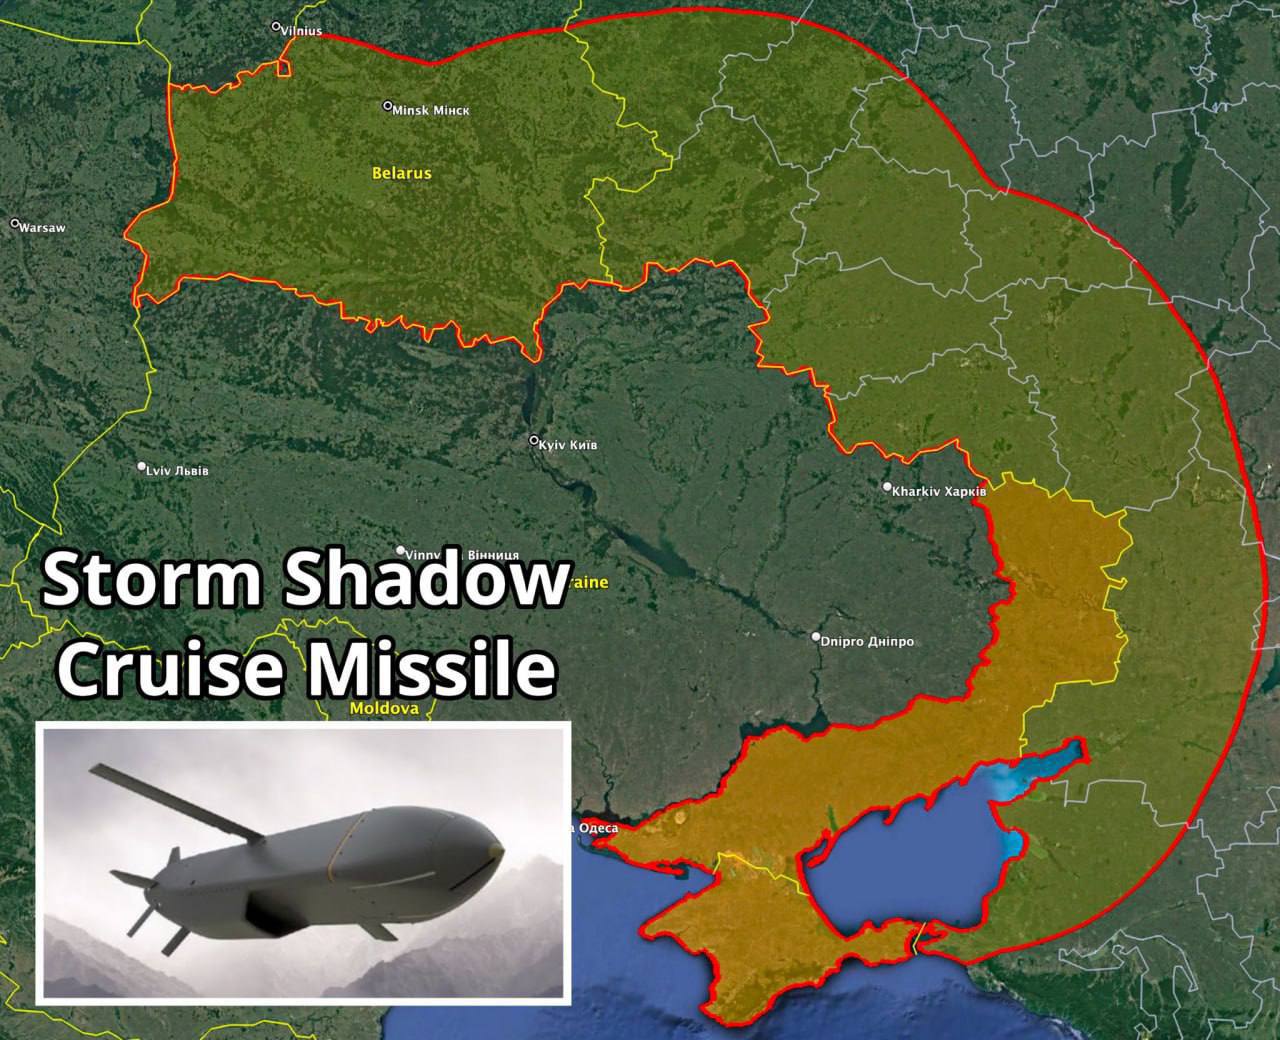 Украина получила убойное оружие, о котором так долго просила Запад: радиус поражения до 290 км – CNN